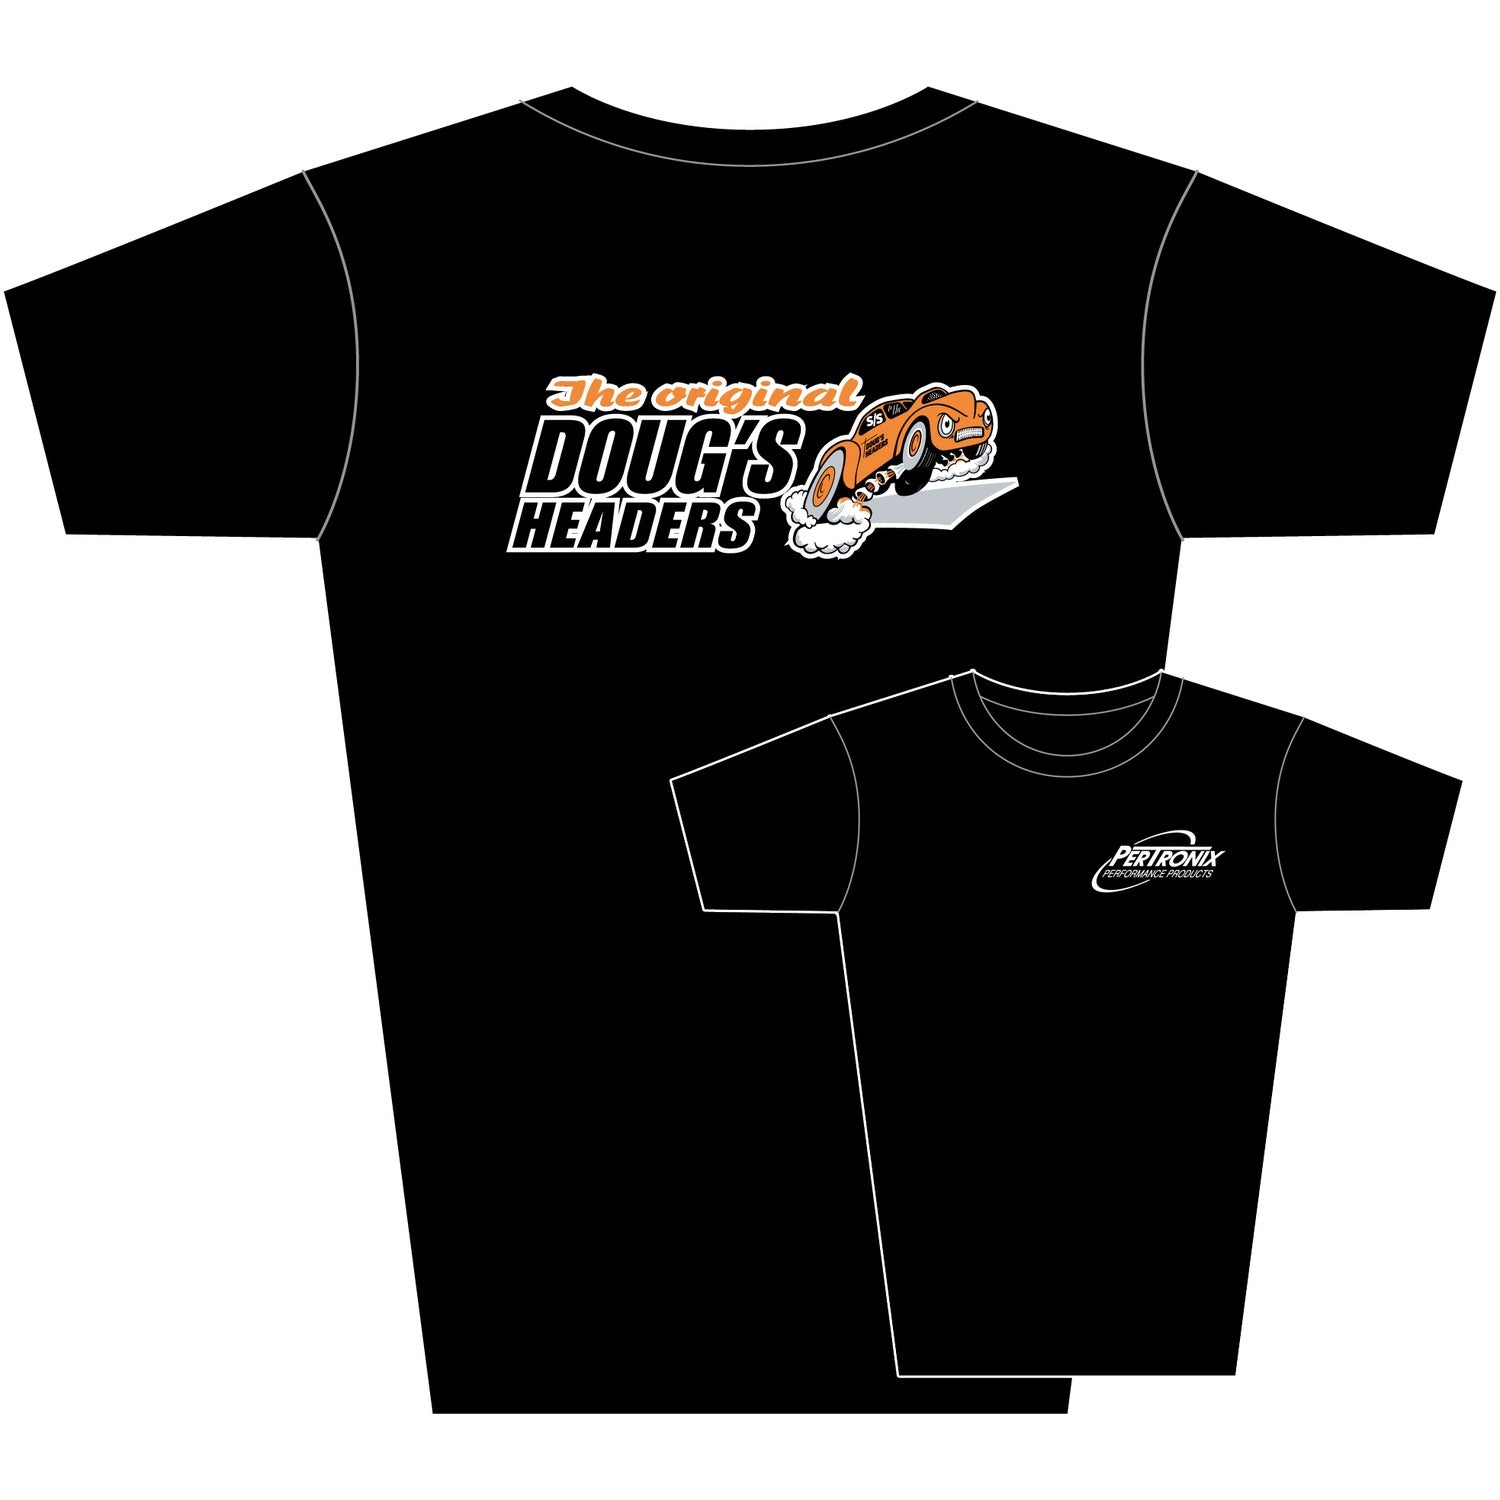 Doug's Headers T-Shirt TS202